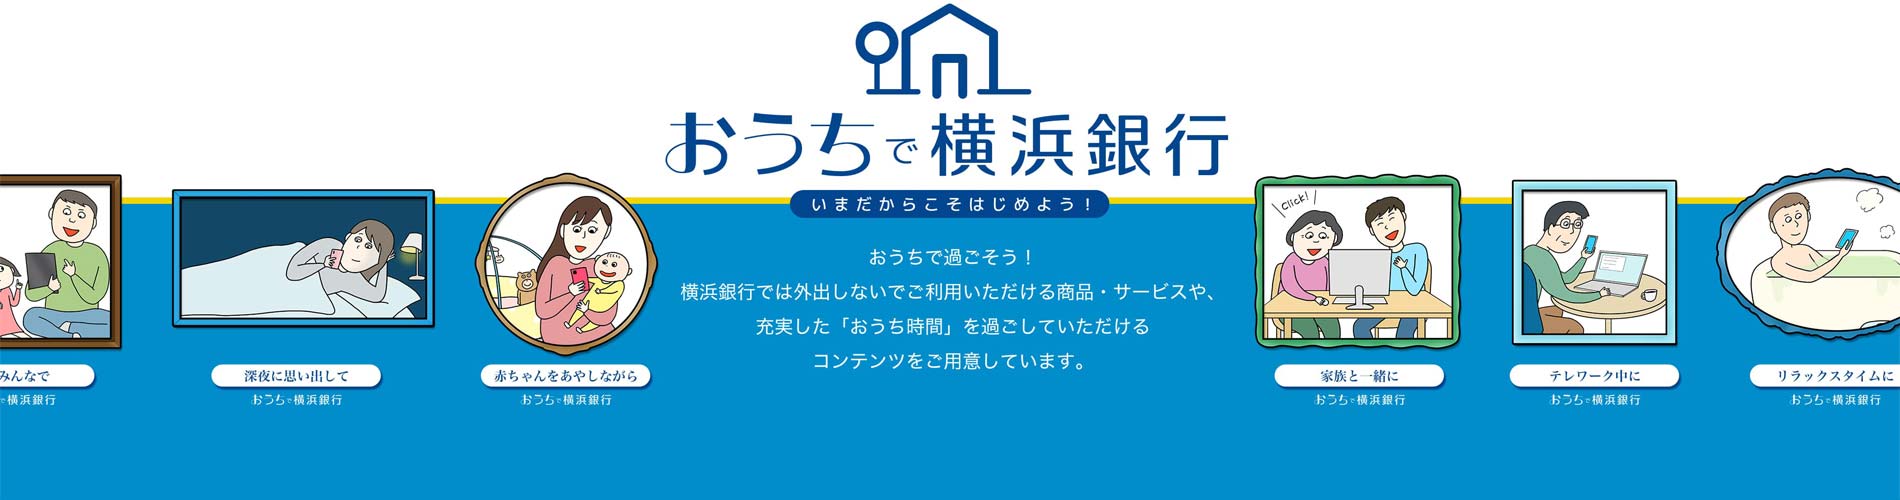 おうちで横浜銀行  いまだからこそはじめよう！おうちで過ごそう！横浜銀行では外出しないでご利用いただける商品・サービスや、充実した「おうち時間」を過ごしていただけるコンテンツをご用意しています。